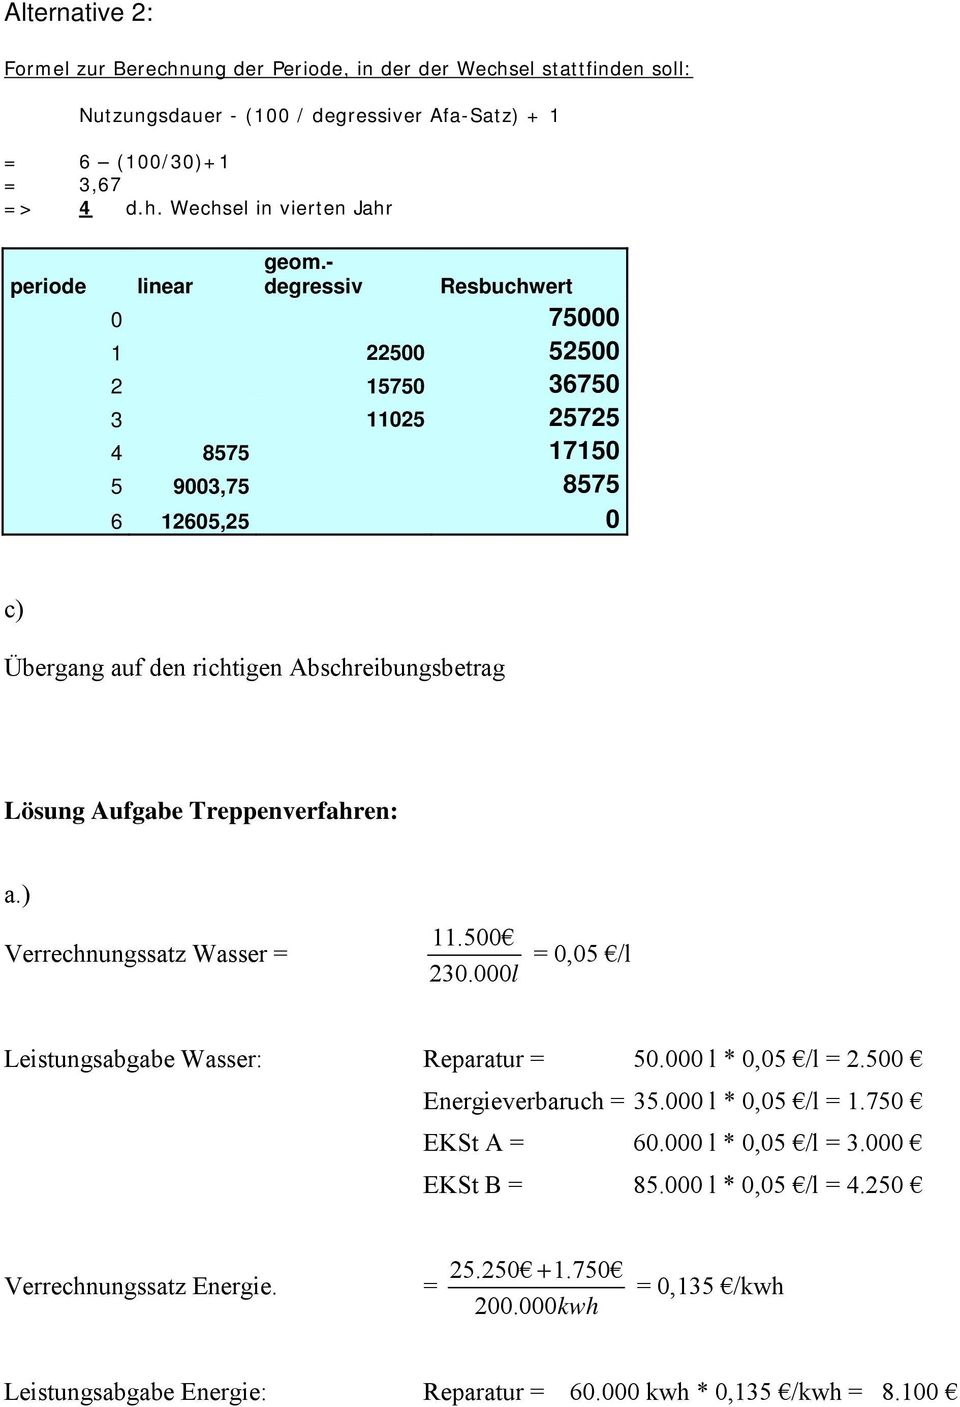 Treppenverfahren: a.) Verrechnungssatz Wasser = 11.500 230.000l = 0,05 /l Leistungsabgabe Wasser: Reparatur = 50.000 l * 0,05 /l = 2.500 Energieverbaruch = 35.000 l * 0,05 /l = 1.750 EKSt A = 60.